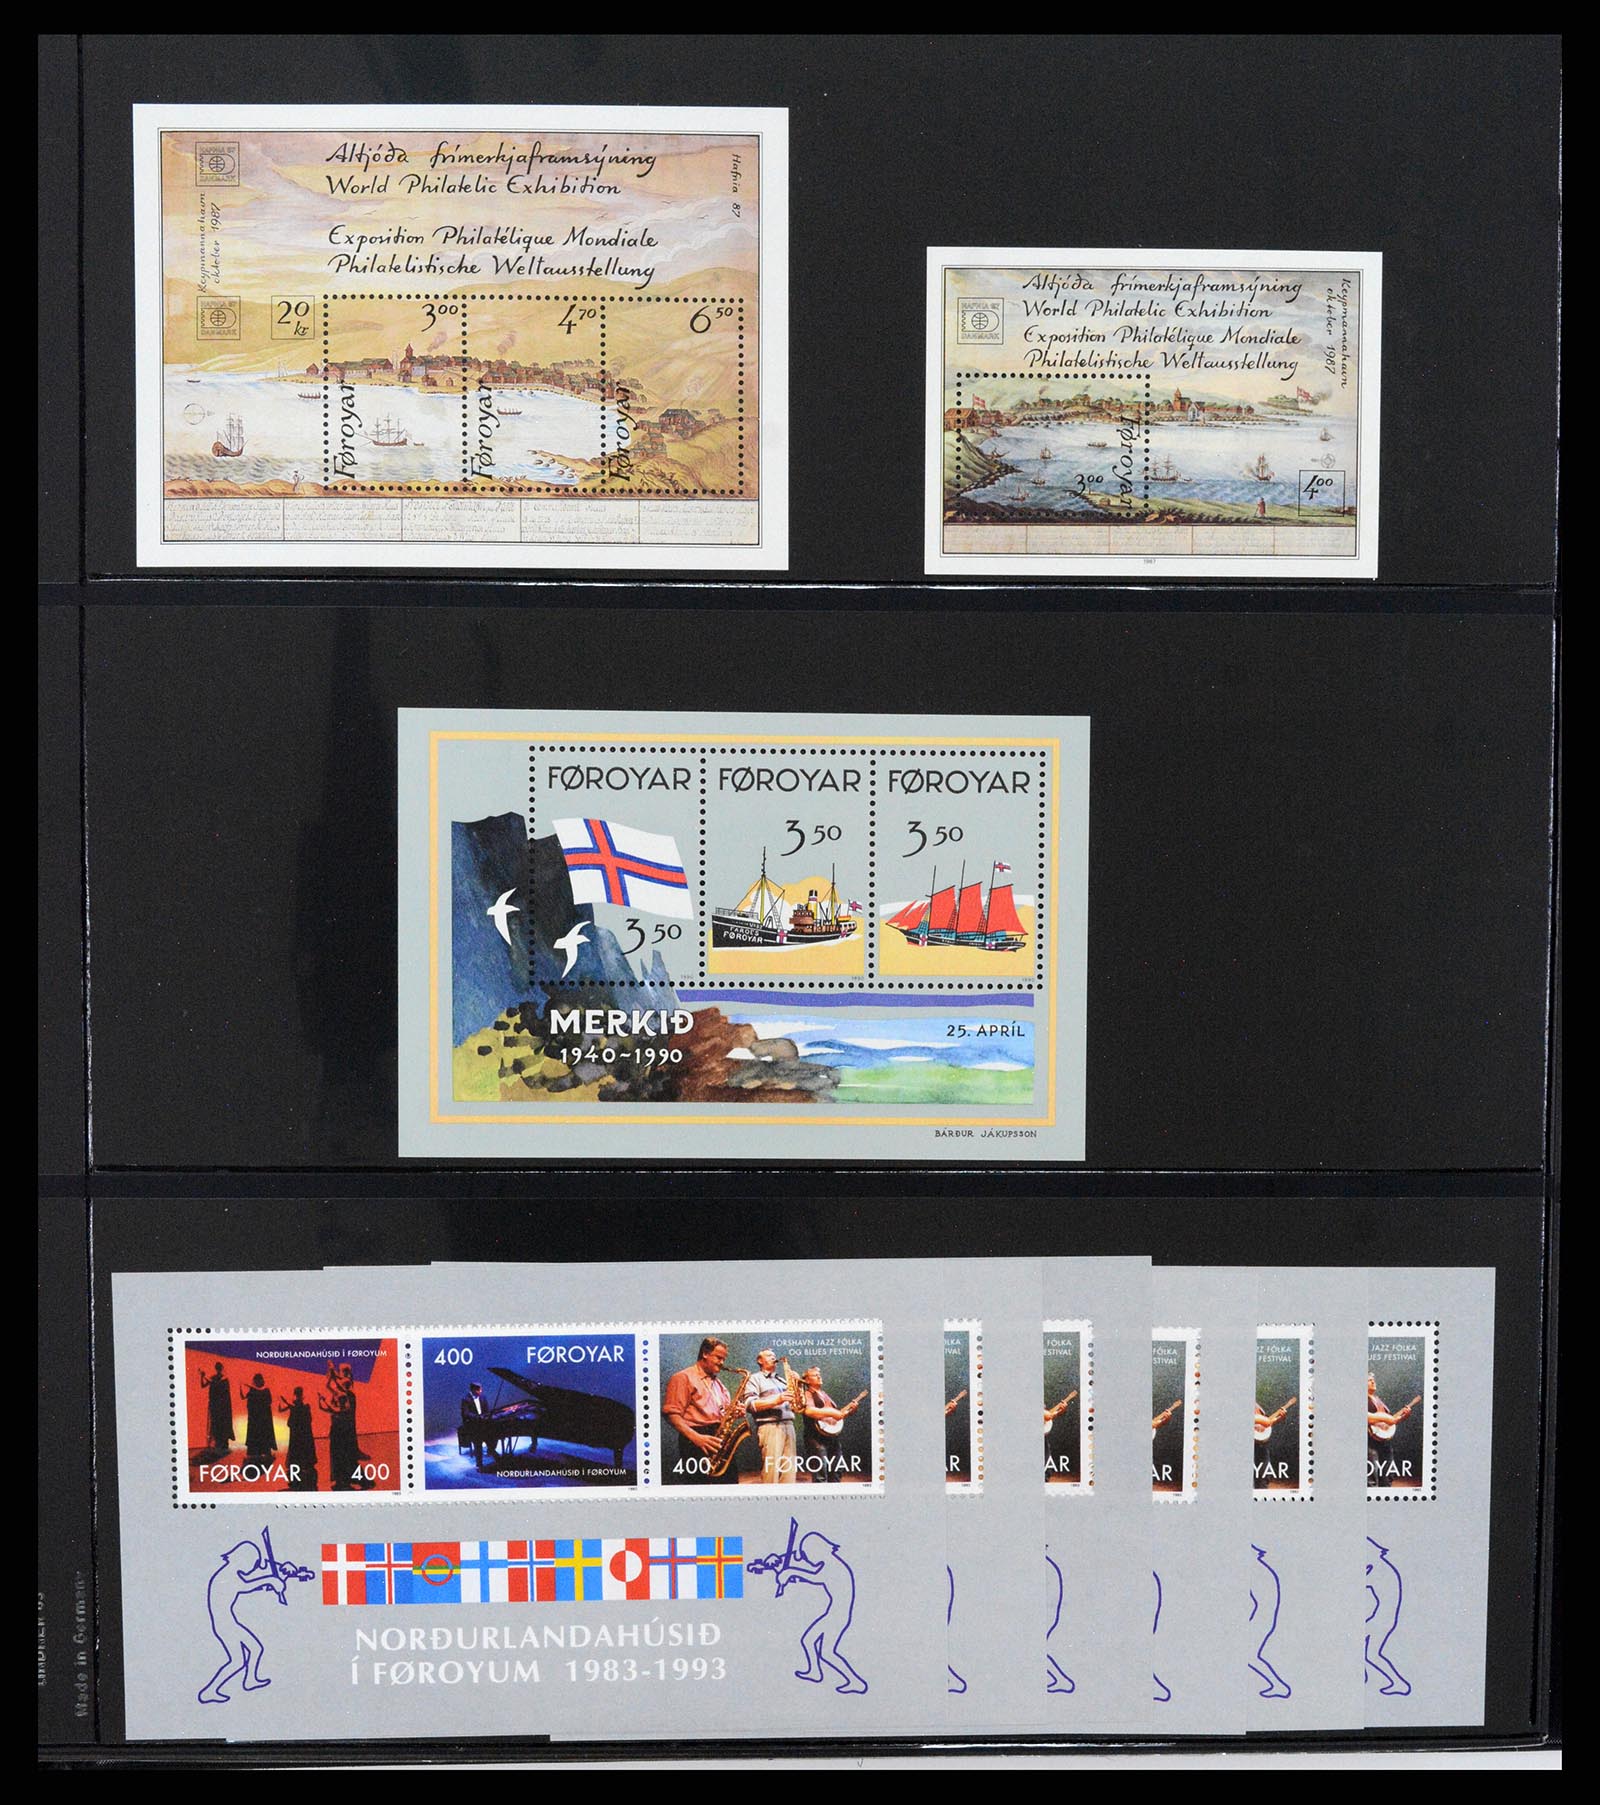 37345 030 - Stamp collection 37345 European countries souvenir sheets.